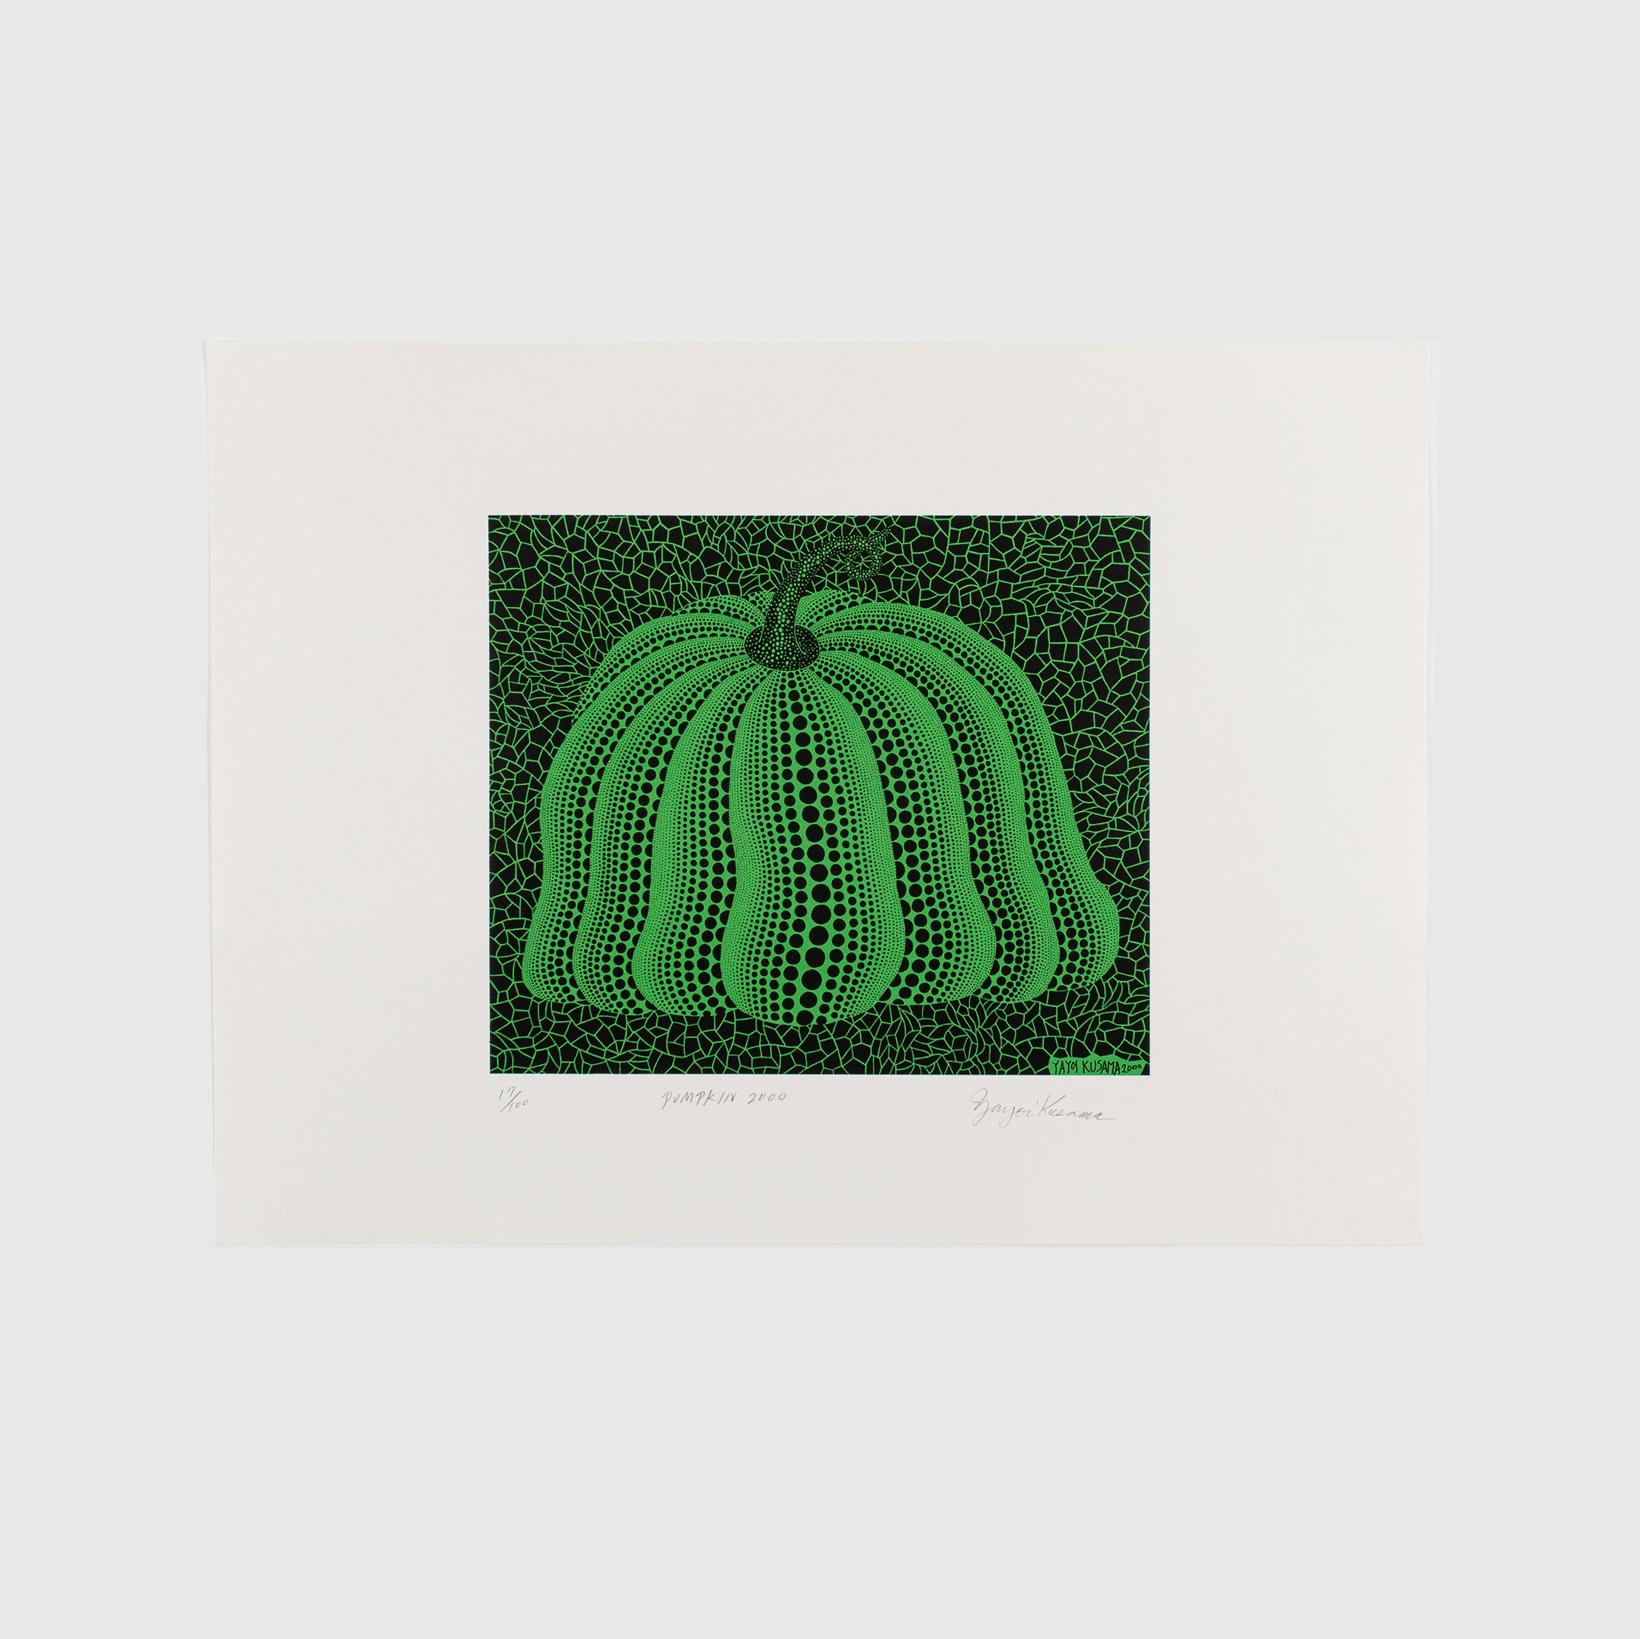 Yayoi Kusama, Pumpkin 2000 (Grün)